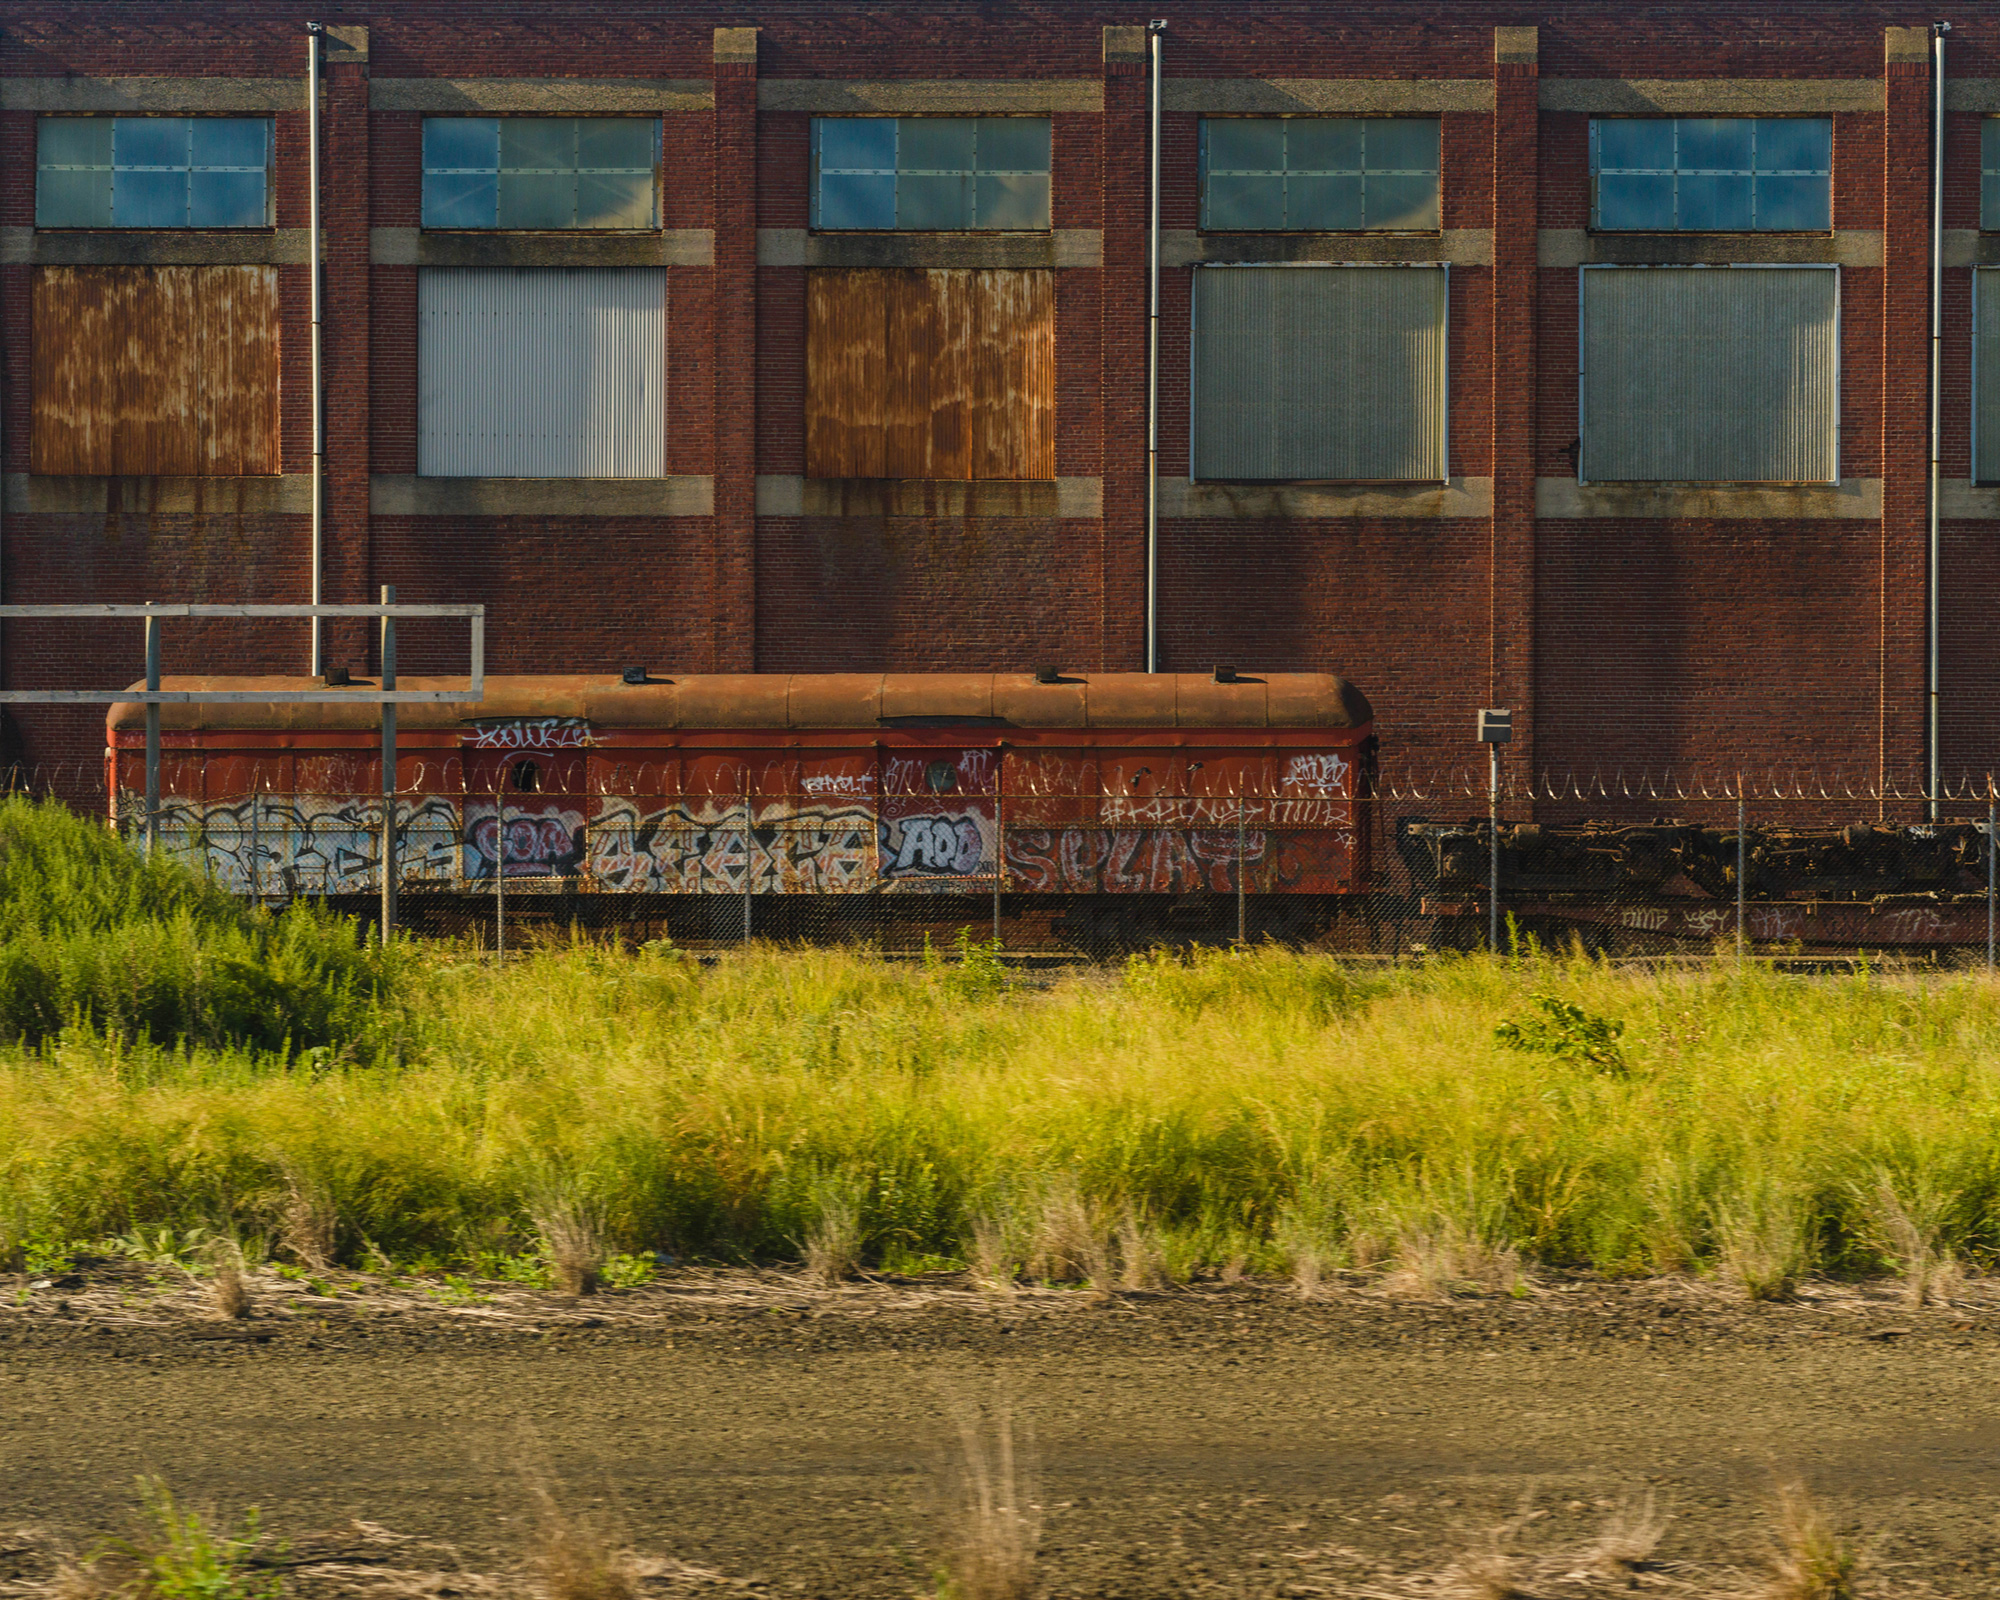 Train with graffiti